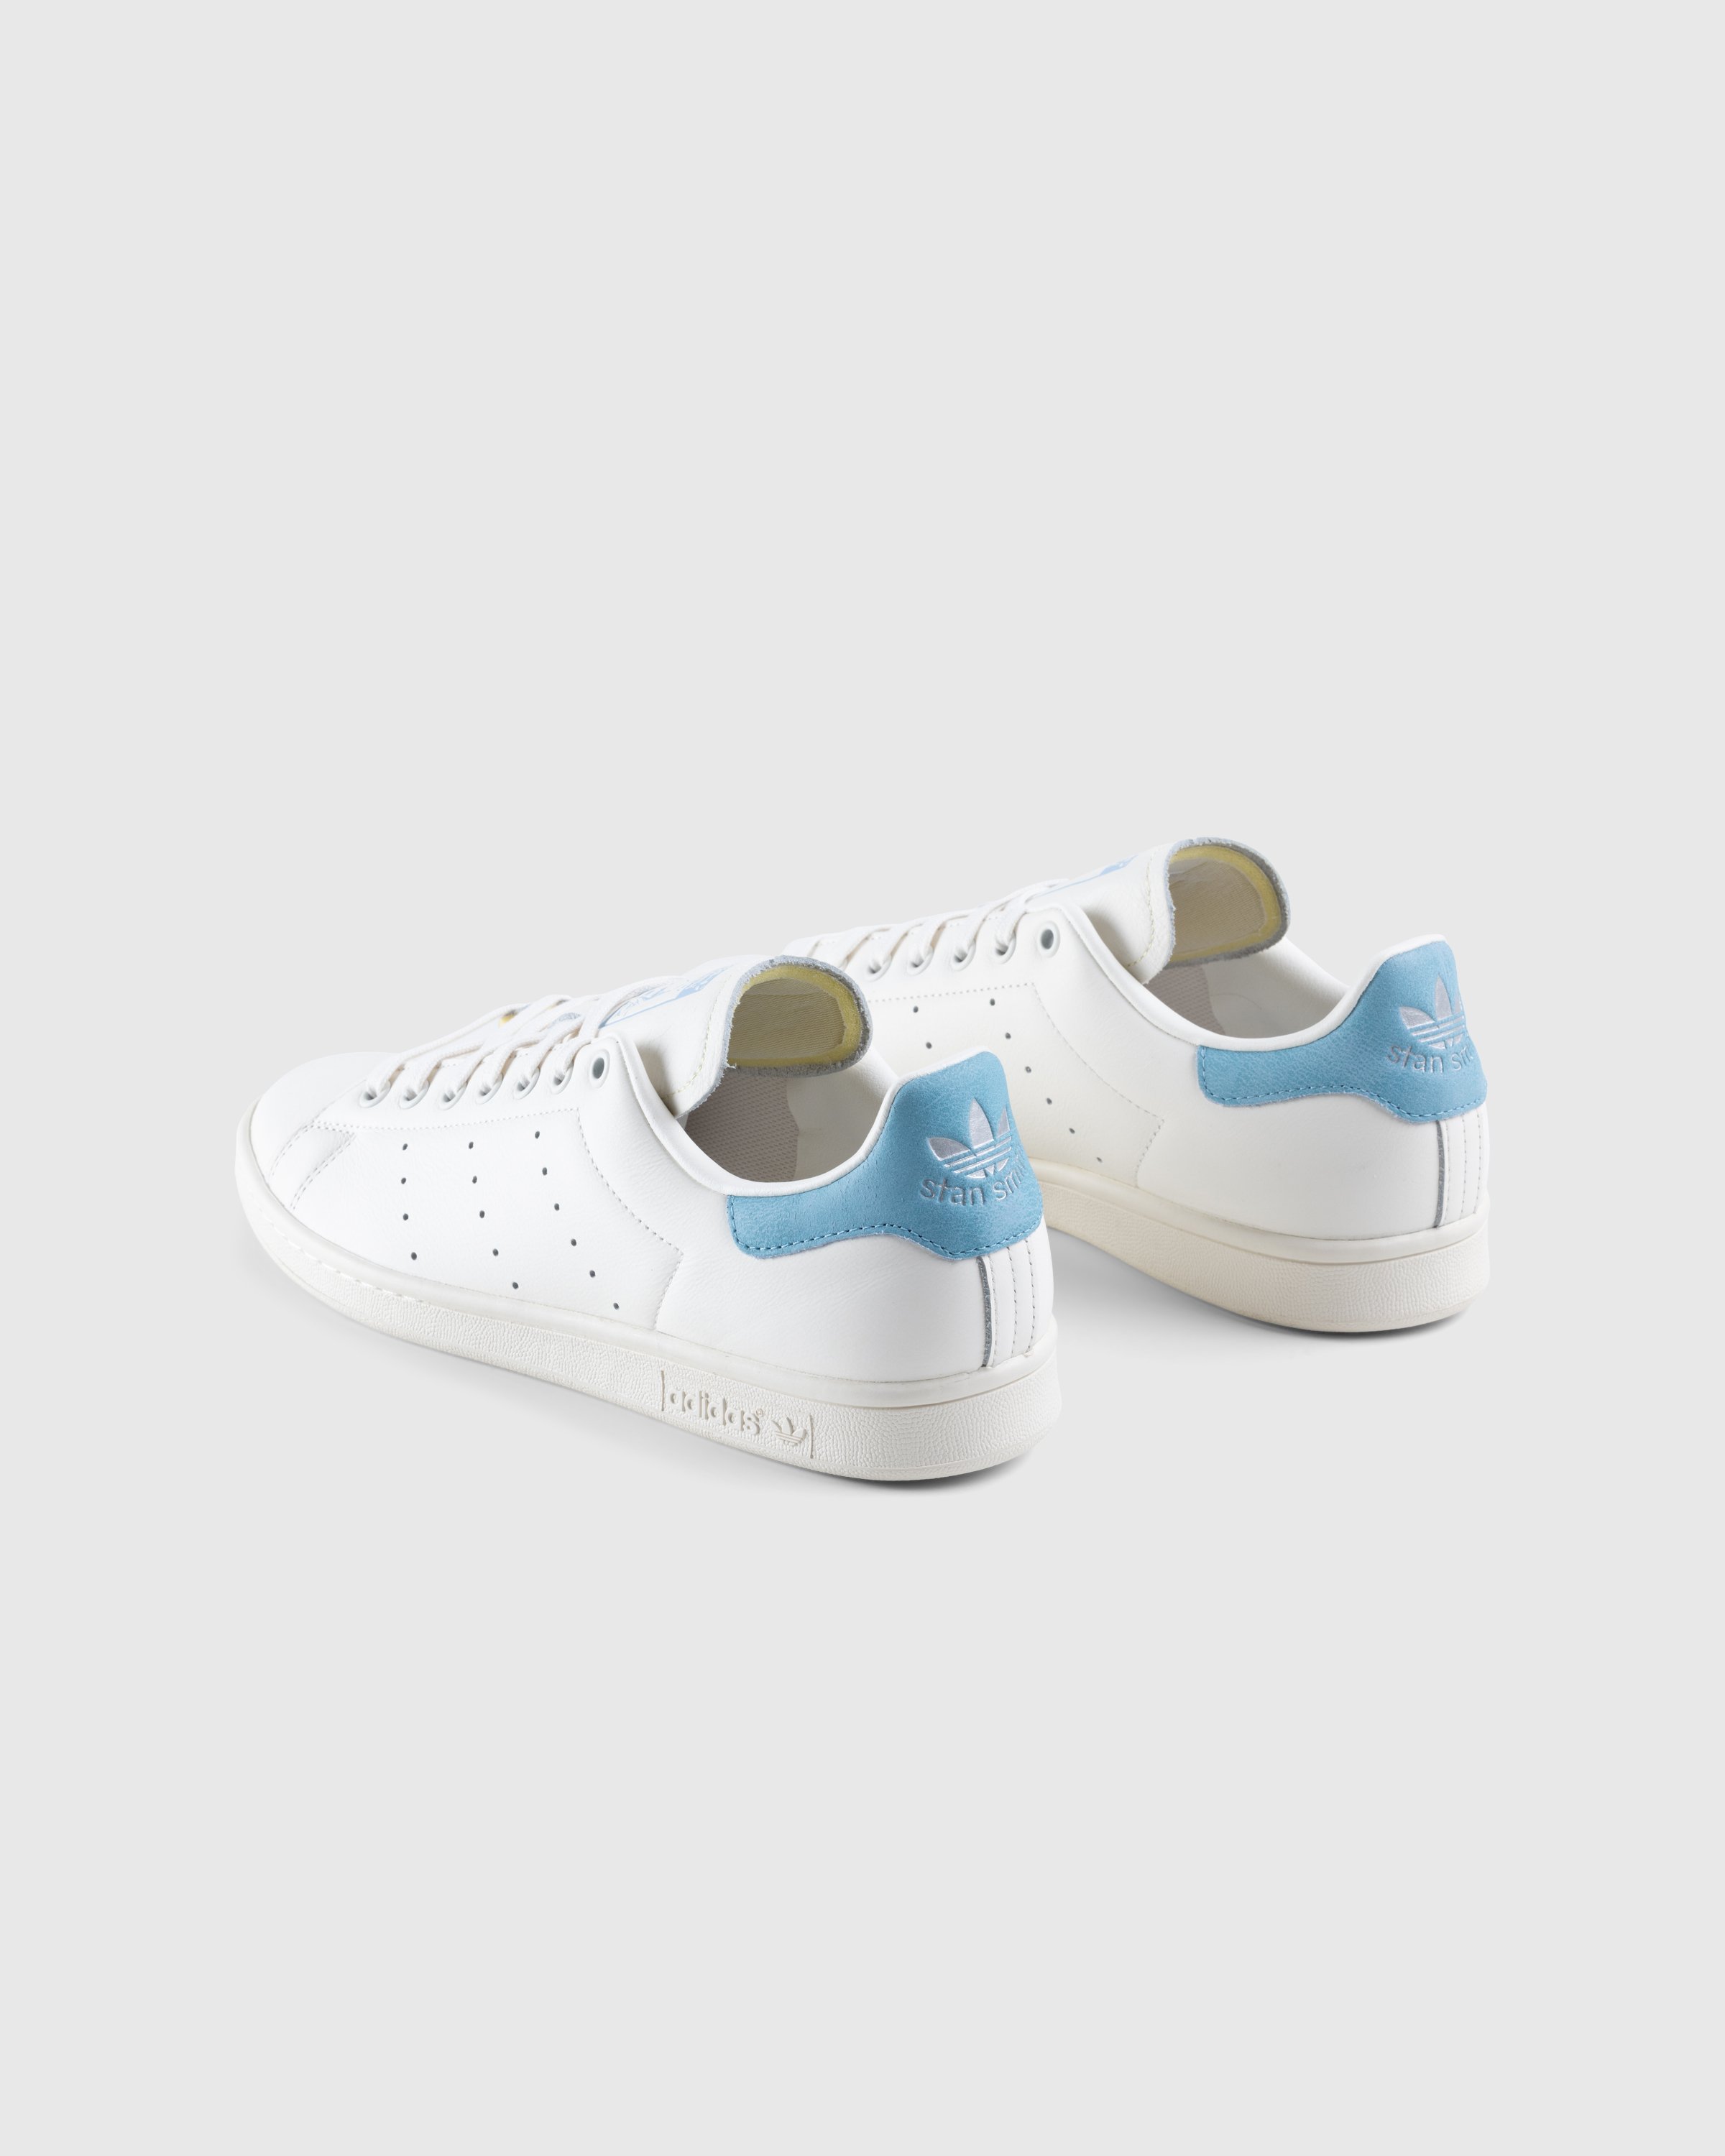 Adidas - Stan Smith White Blue - Footwear - White - Image 4